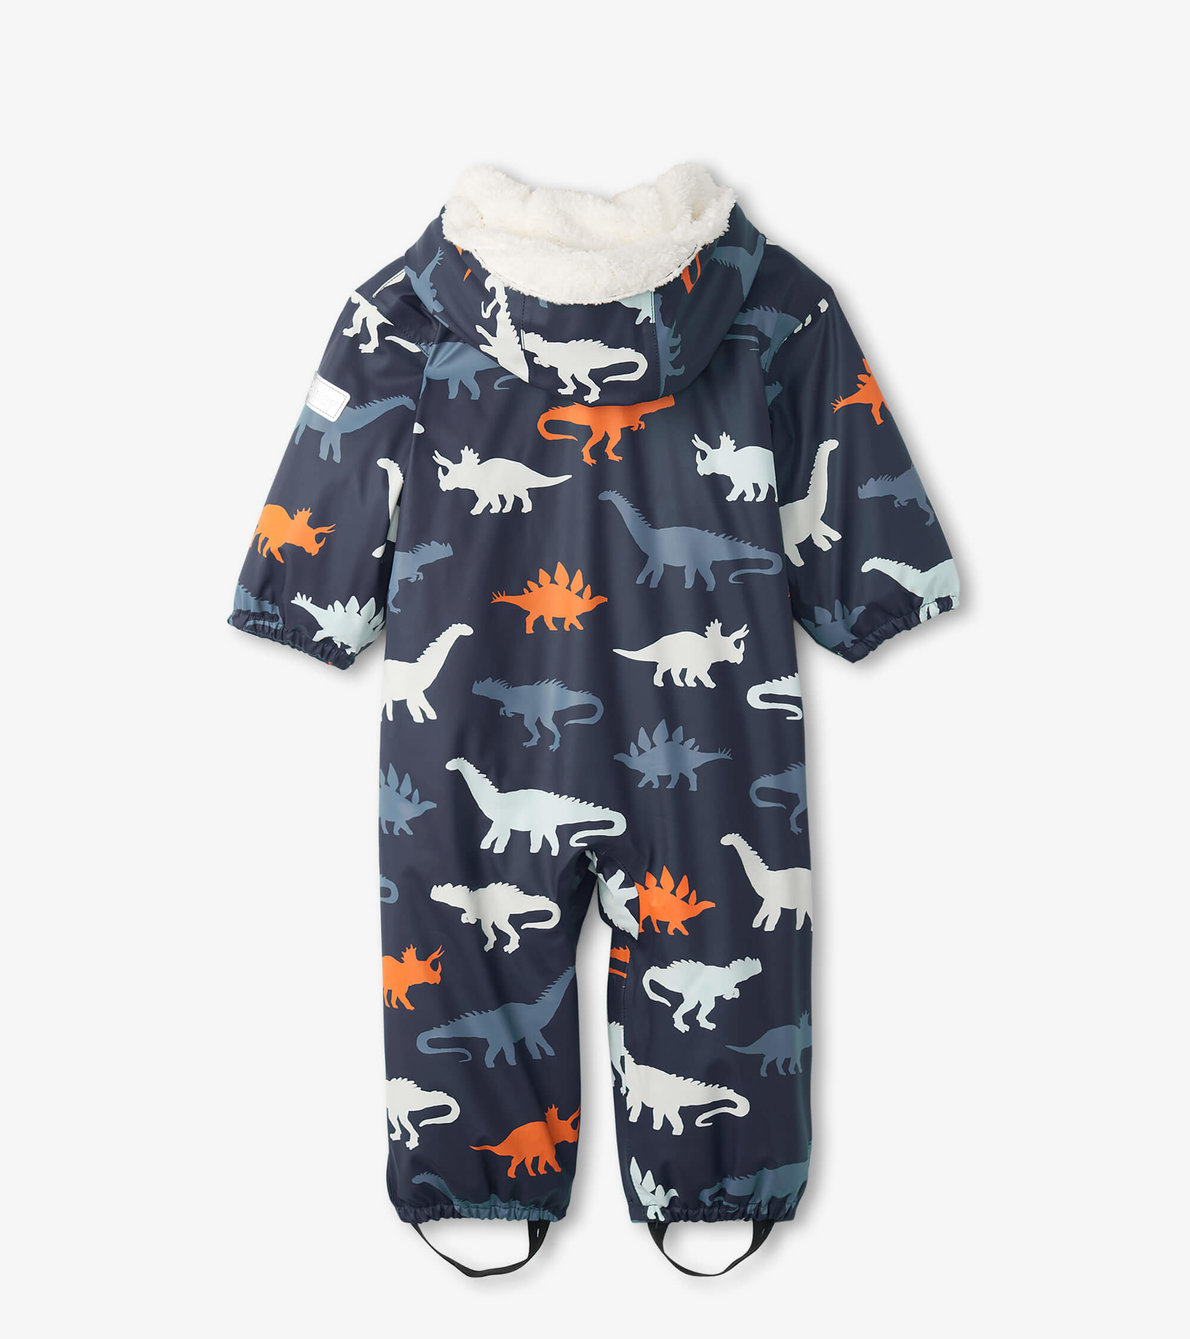 Agrandir l'image de Combinaison imperméable à couleur changeante doublée en sherpa pour bébé – Silhouettes de dinosaures